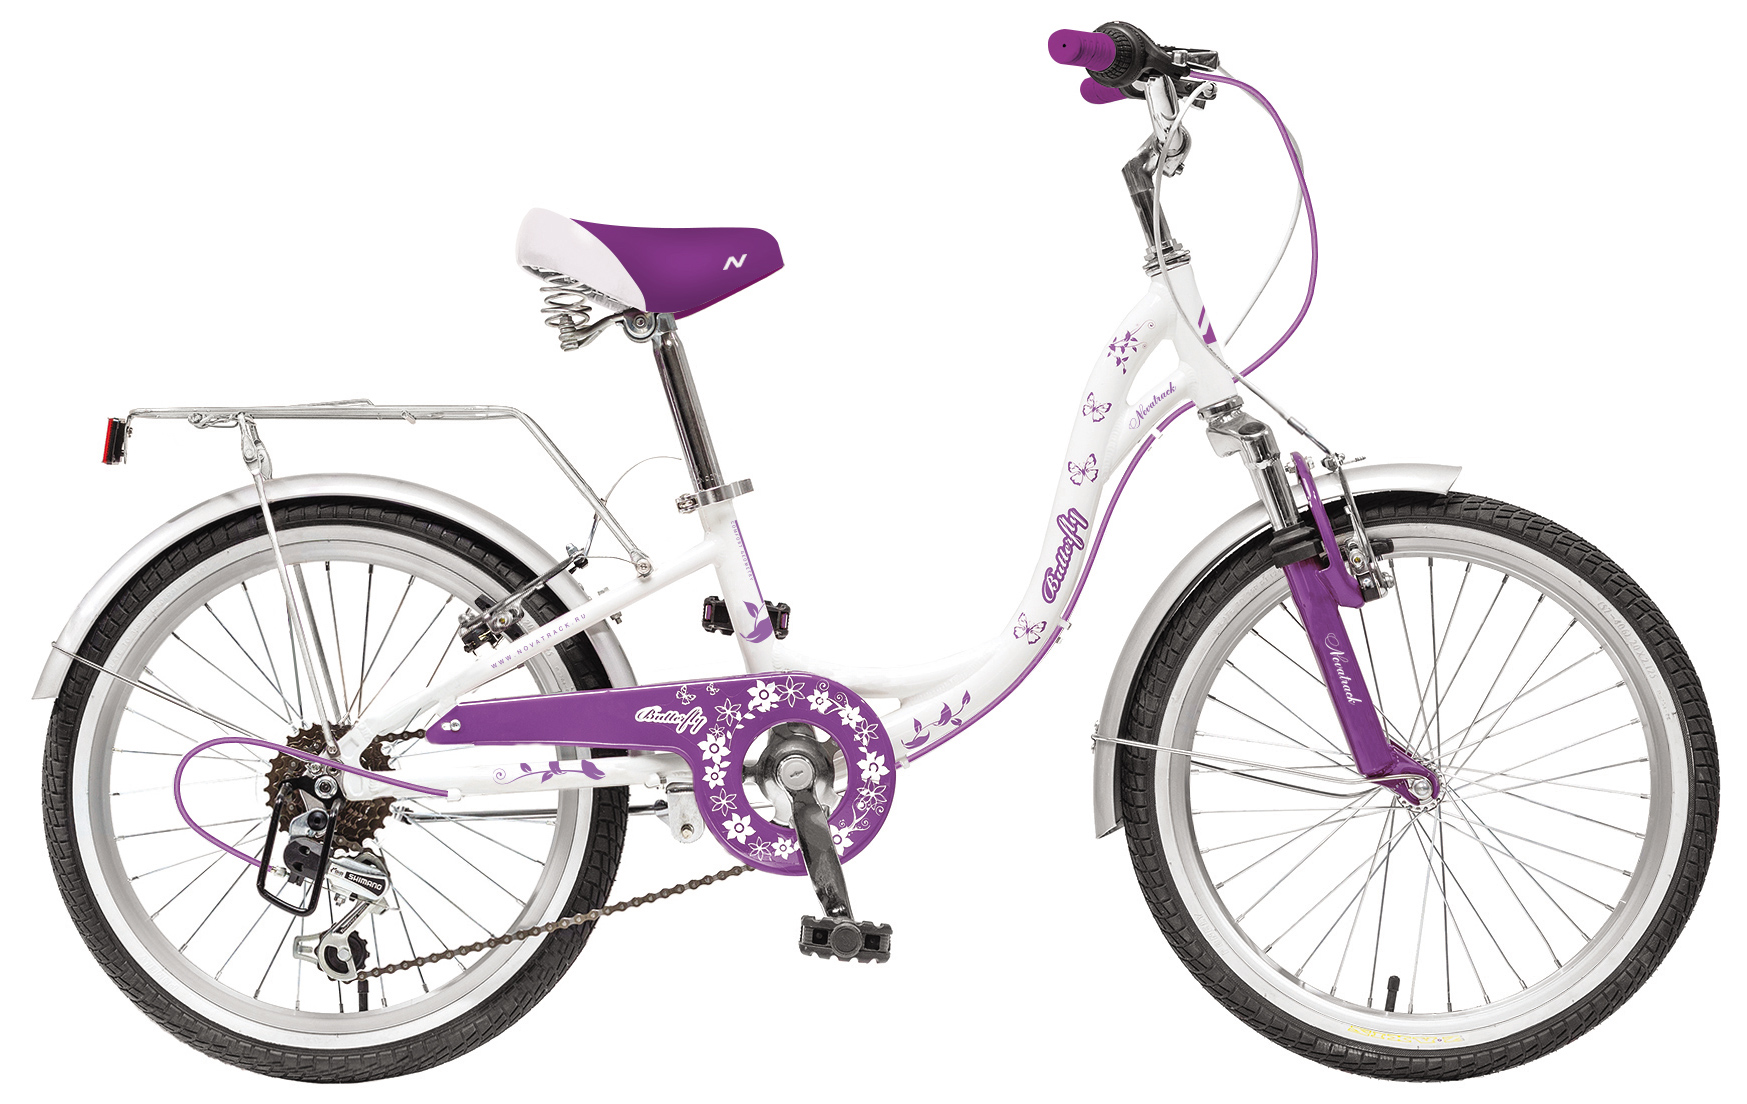  Отзывы о Детском велосипеде Novatrack Butterfly 20" 6sp 2019